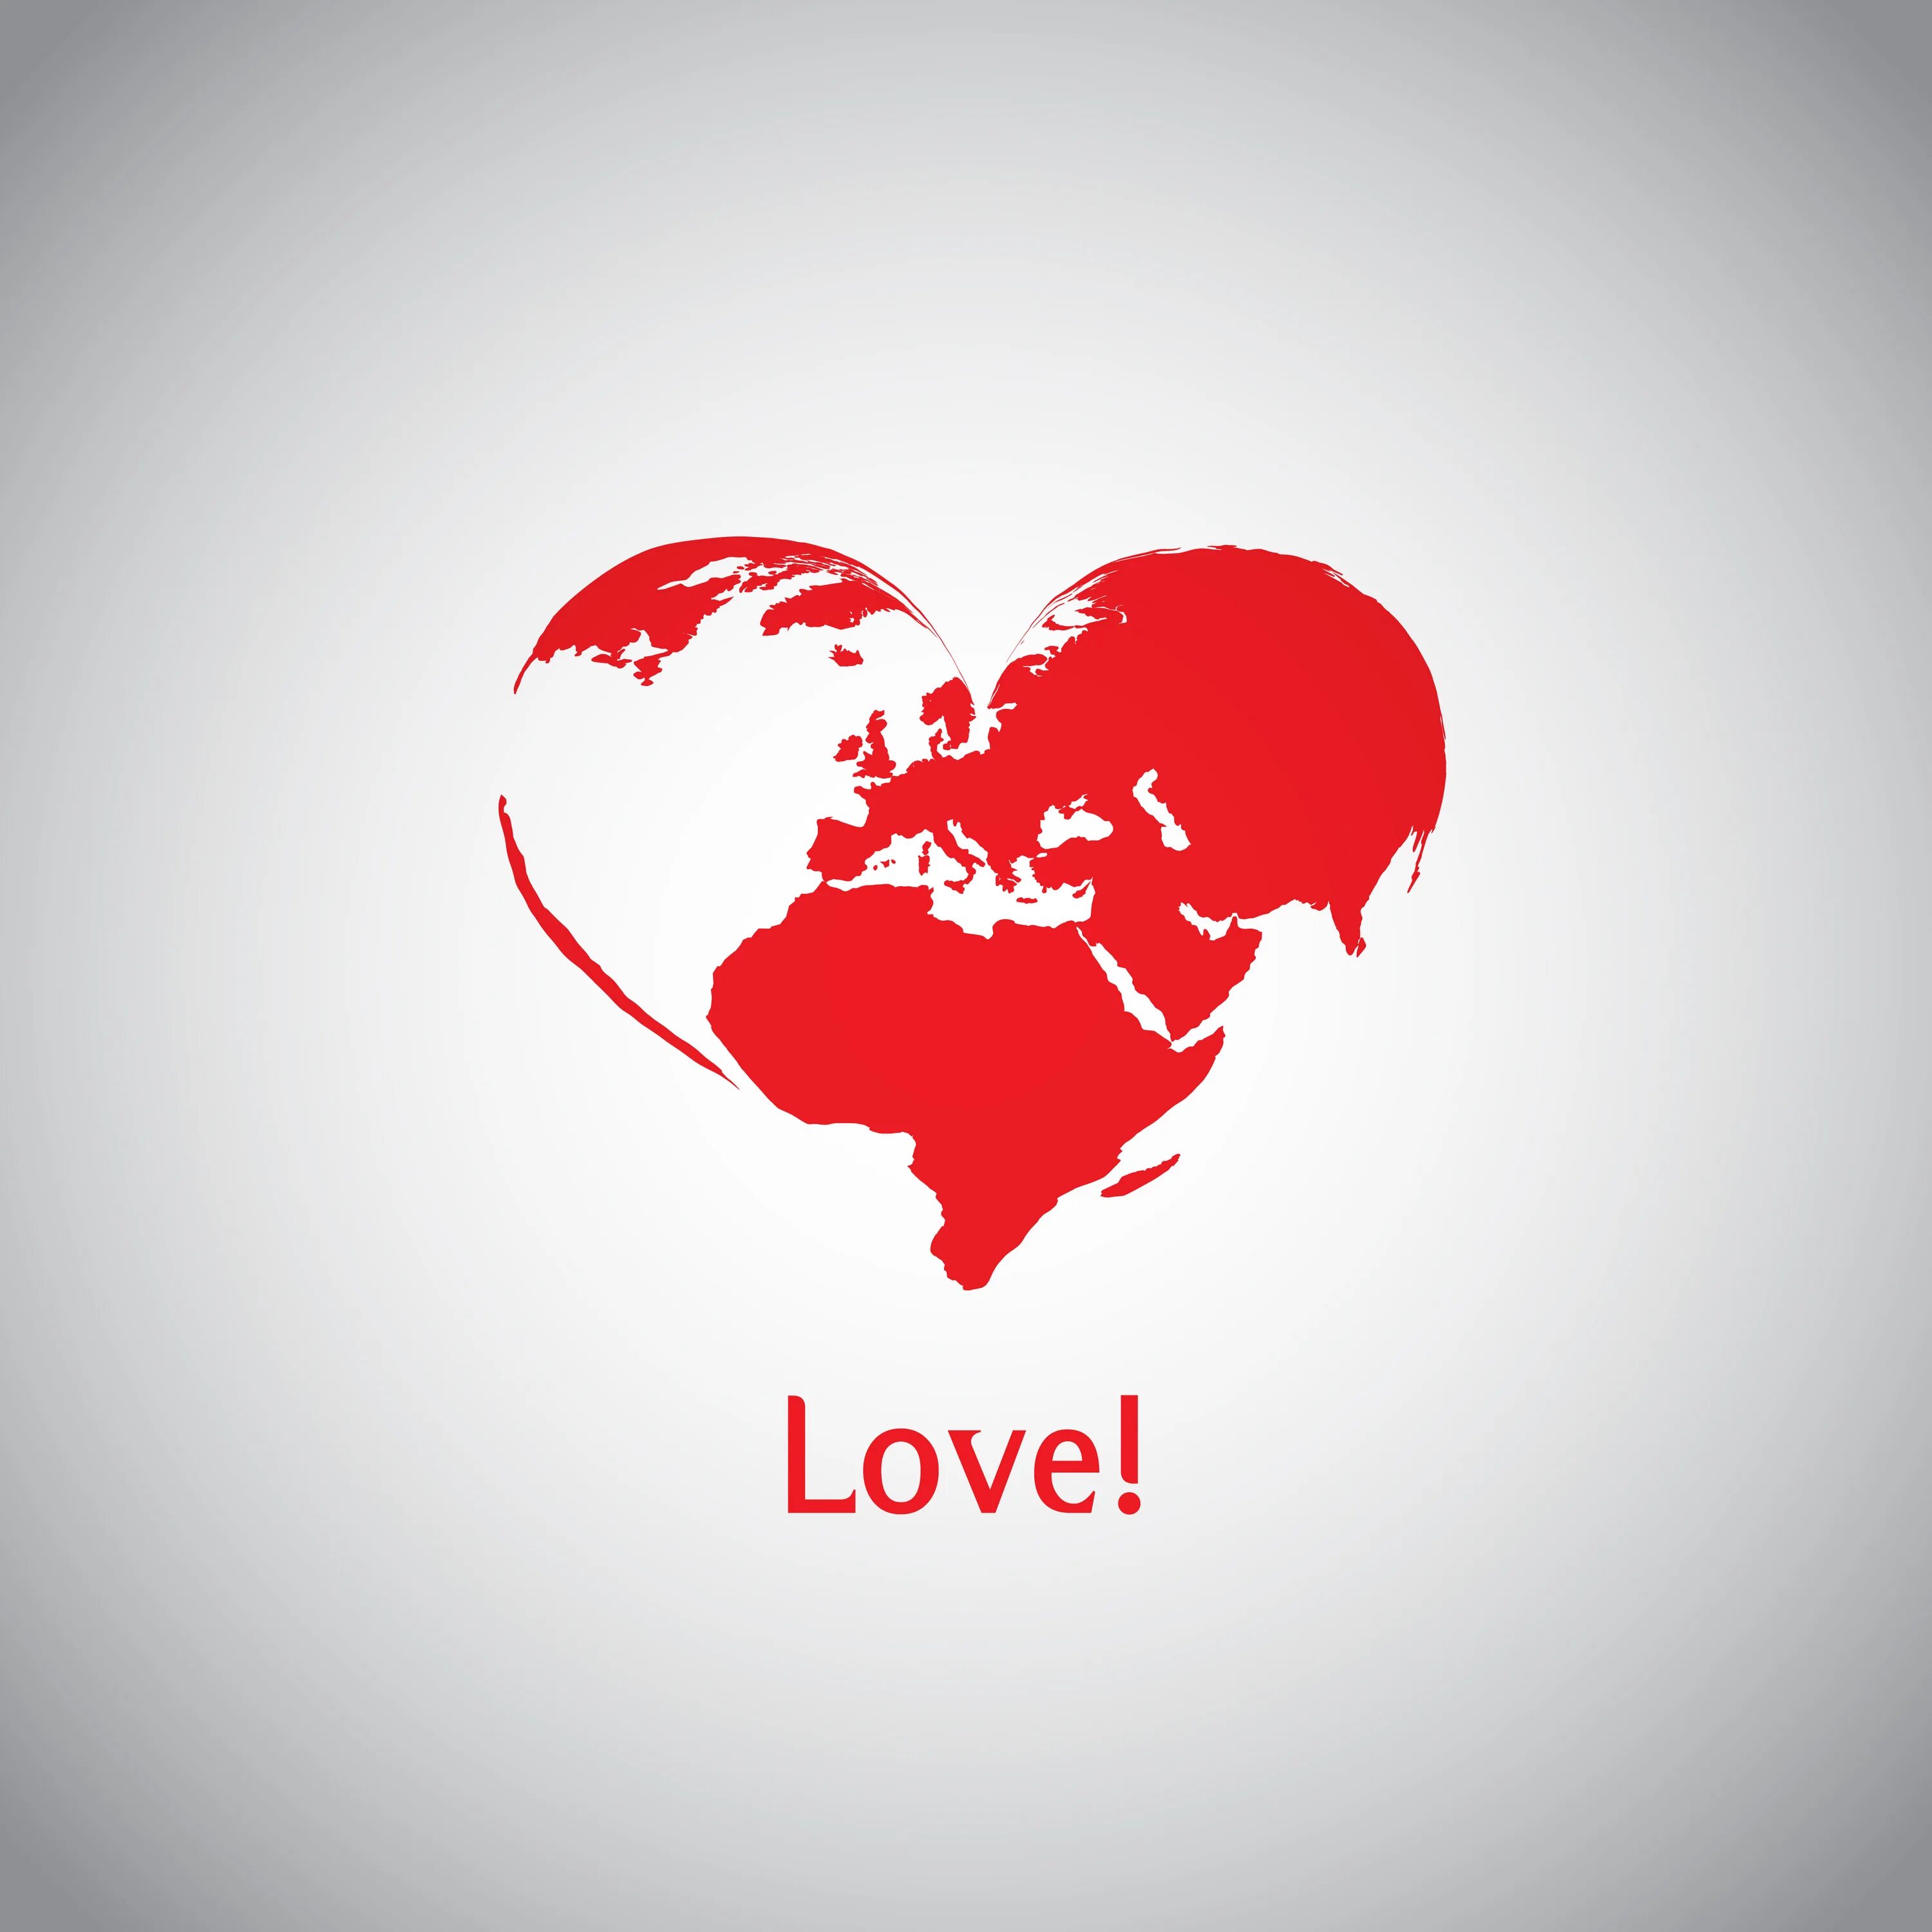 We love world. Мир в сердце. День глобальной любви. День глобальной любви (Global Love Day). Мир любовь сердца.